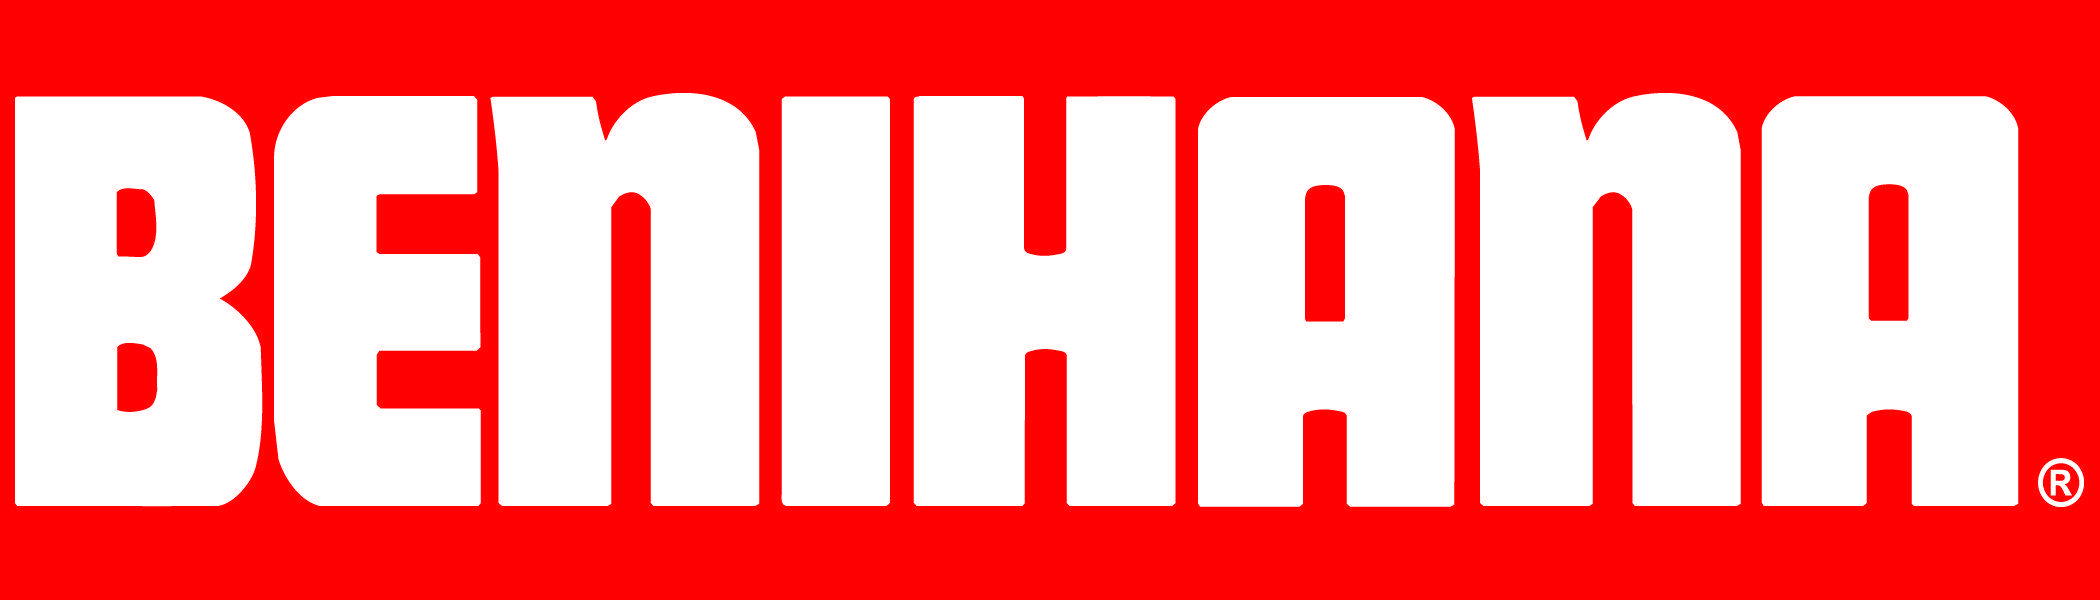 Benihana Logo - Benihana